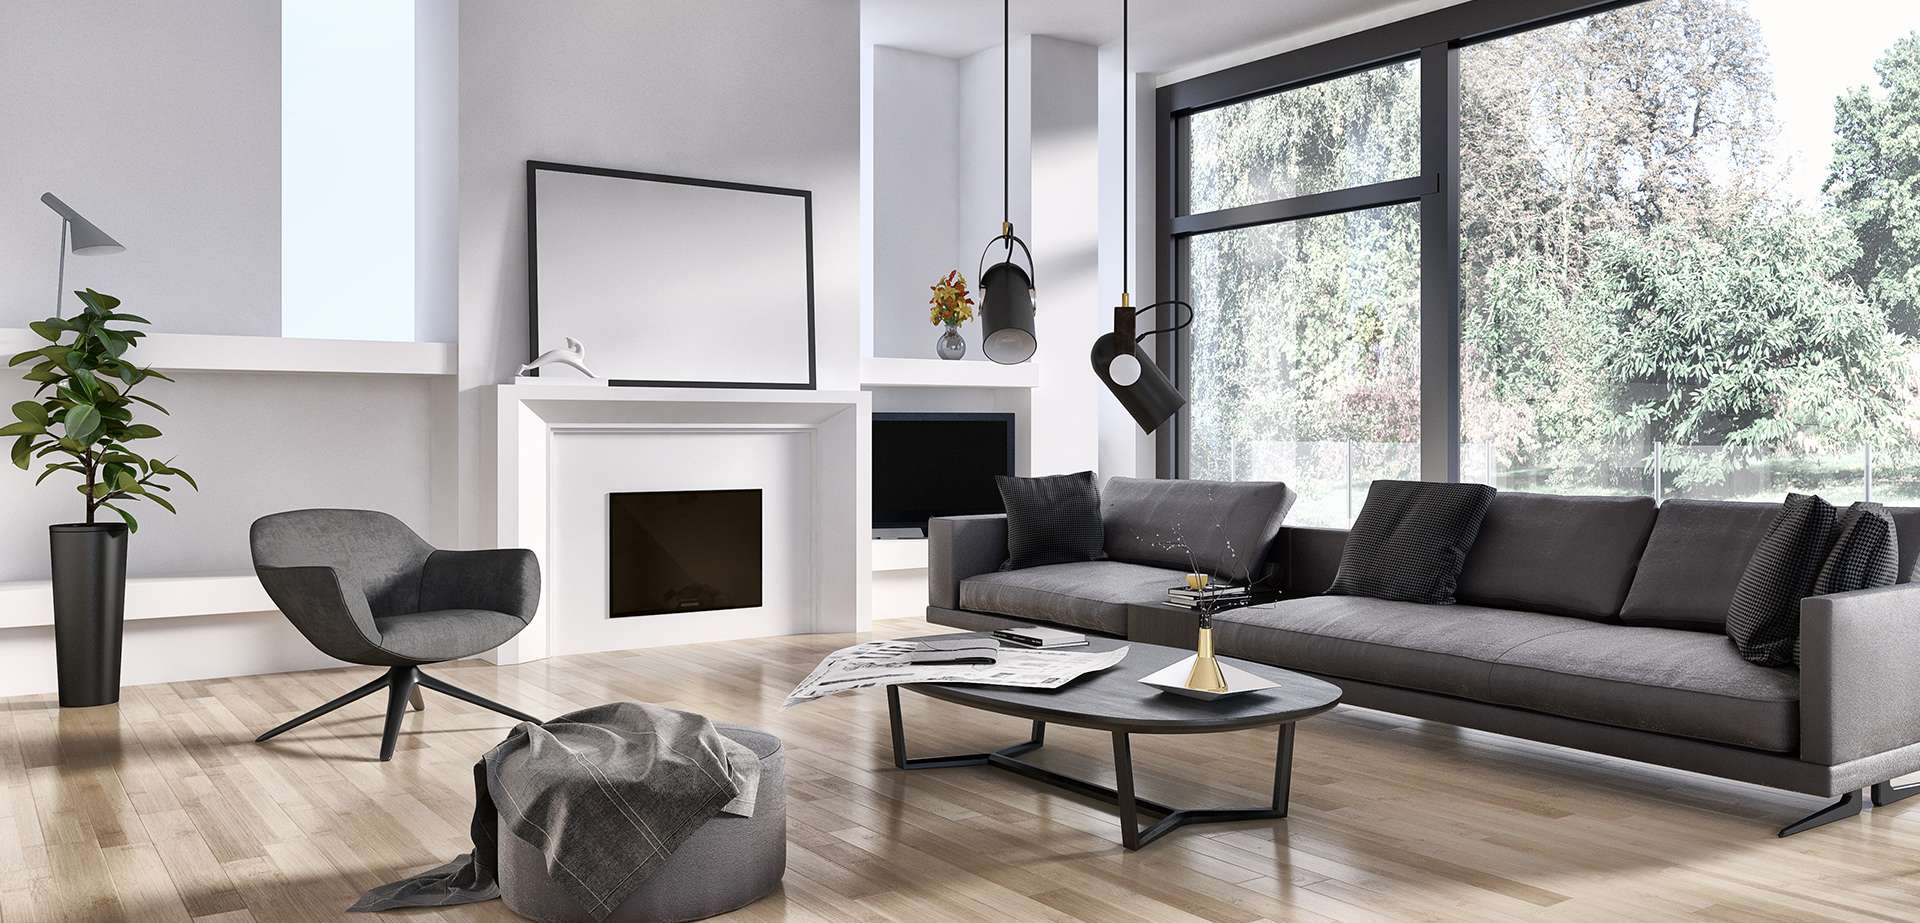 Modernes Wohnzimmer mit grauen Möbeln und Kamin